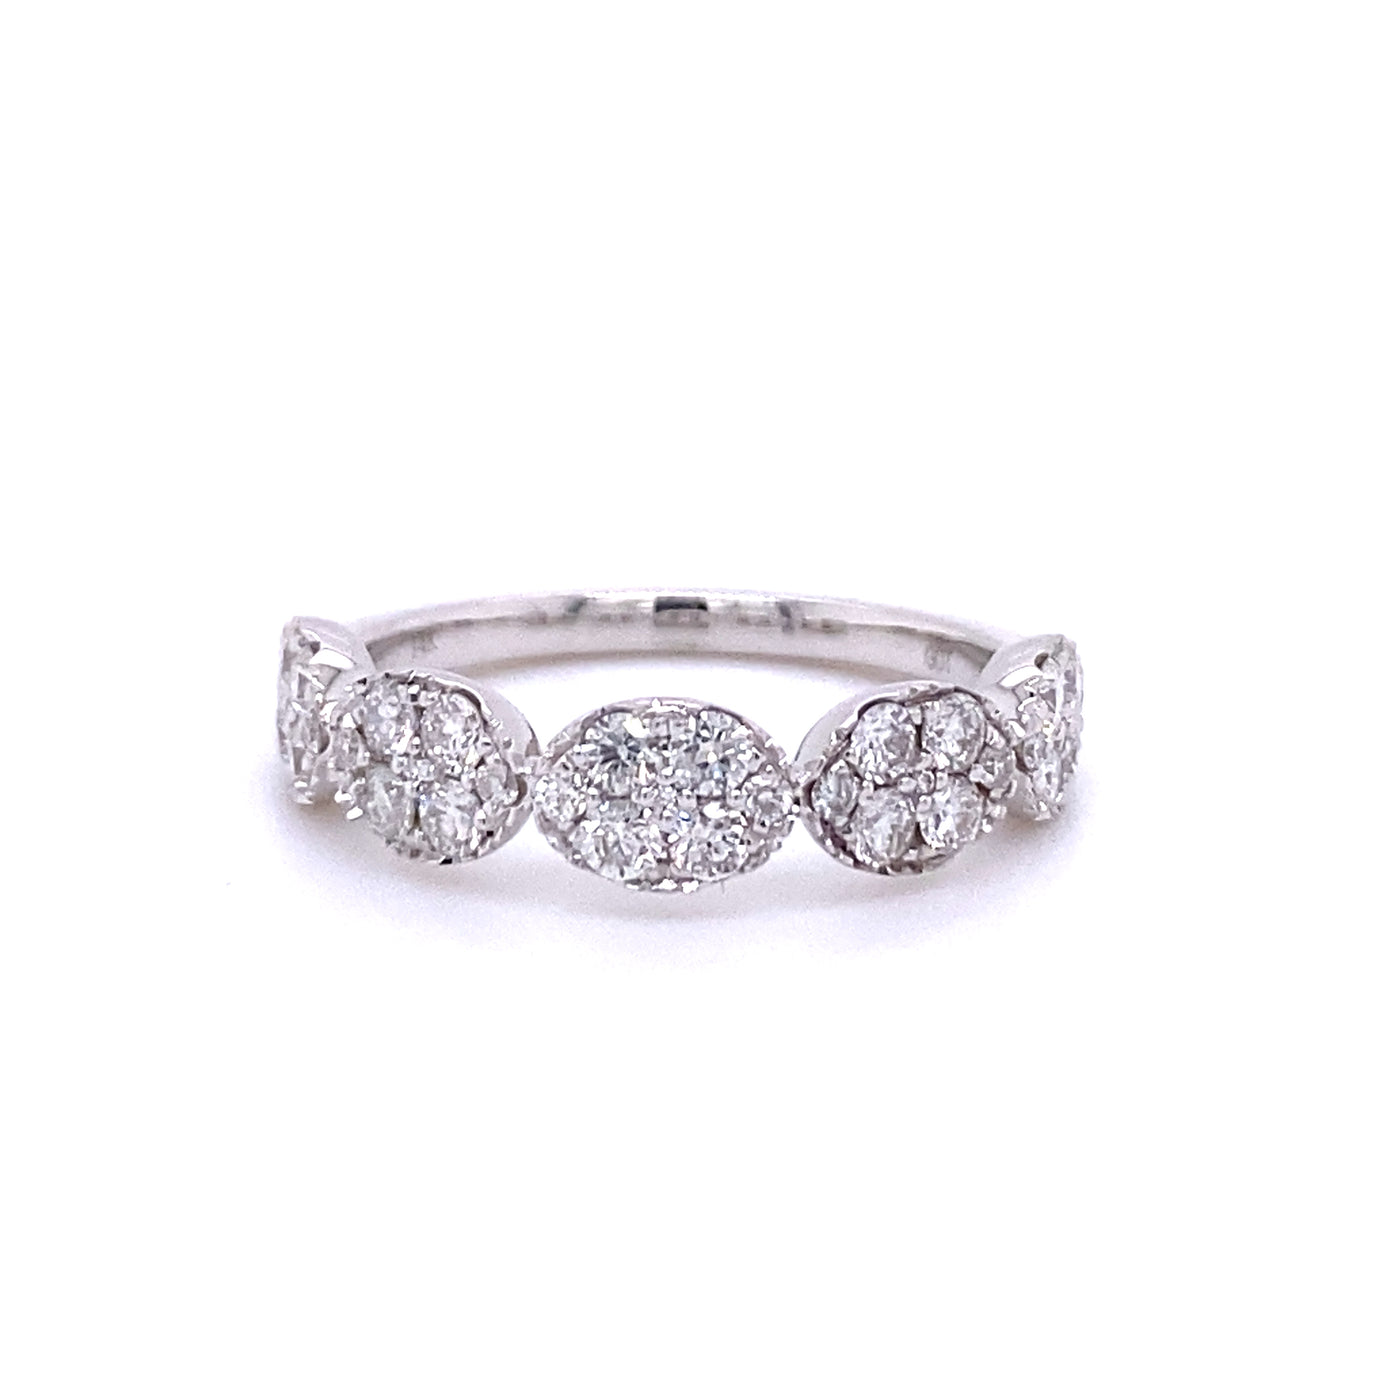 14 KT White Gold Diamond Fashion Ladies Ring - RG10637-4WB